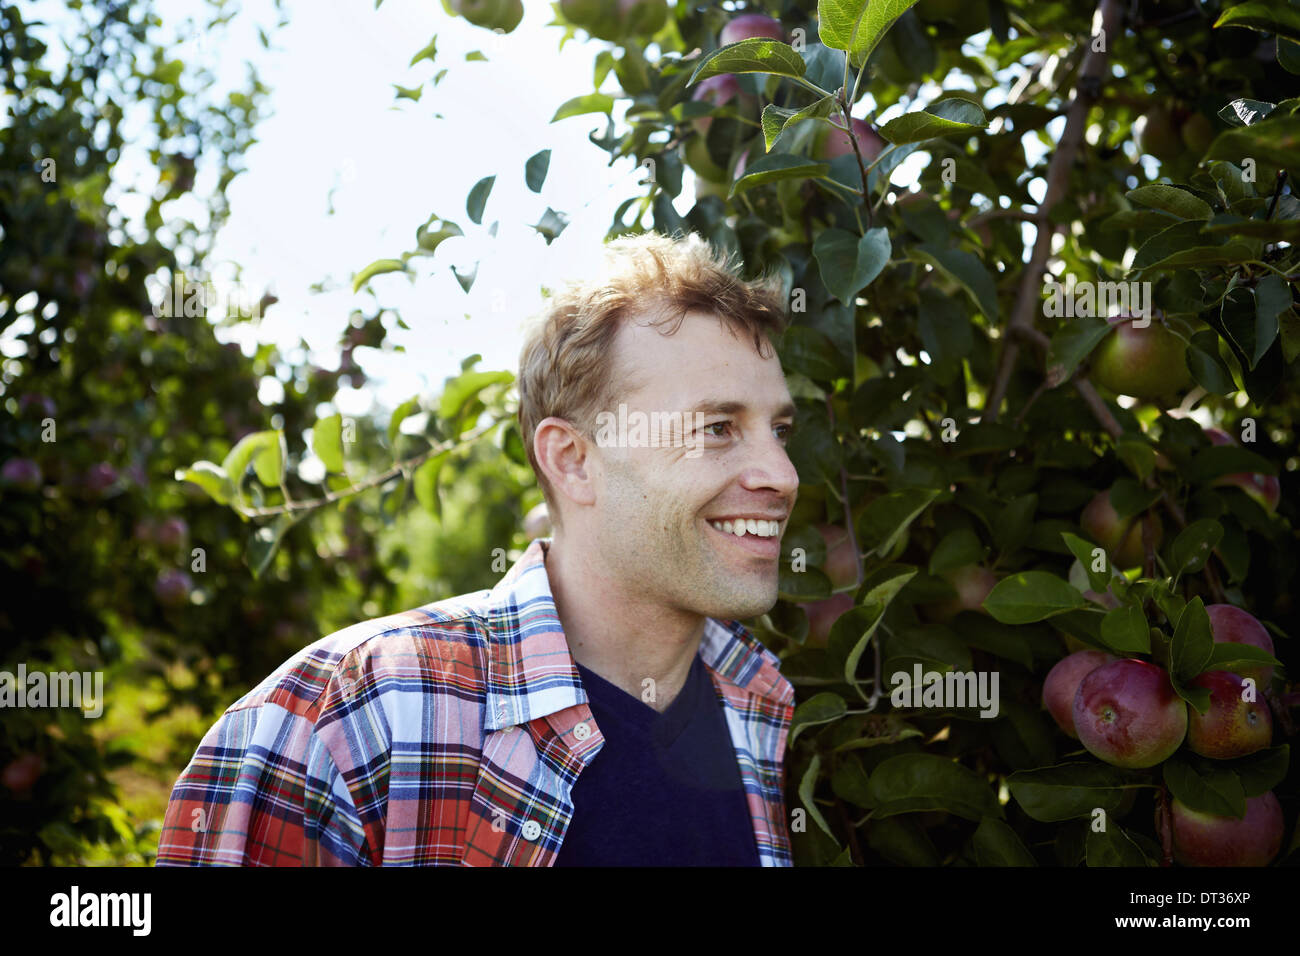 Ein Mann in ein kariertes Hemd in einer Apfelplantage Baum Stockfoto